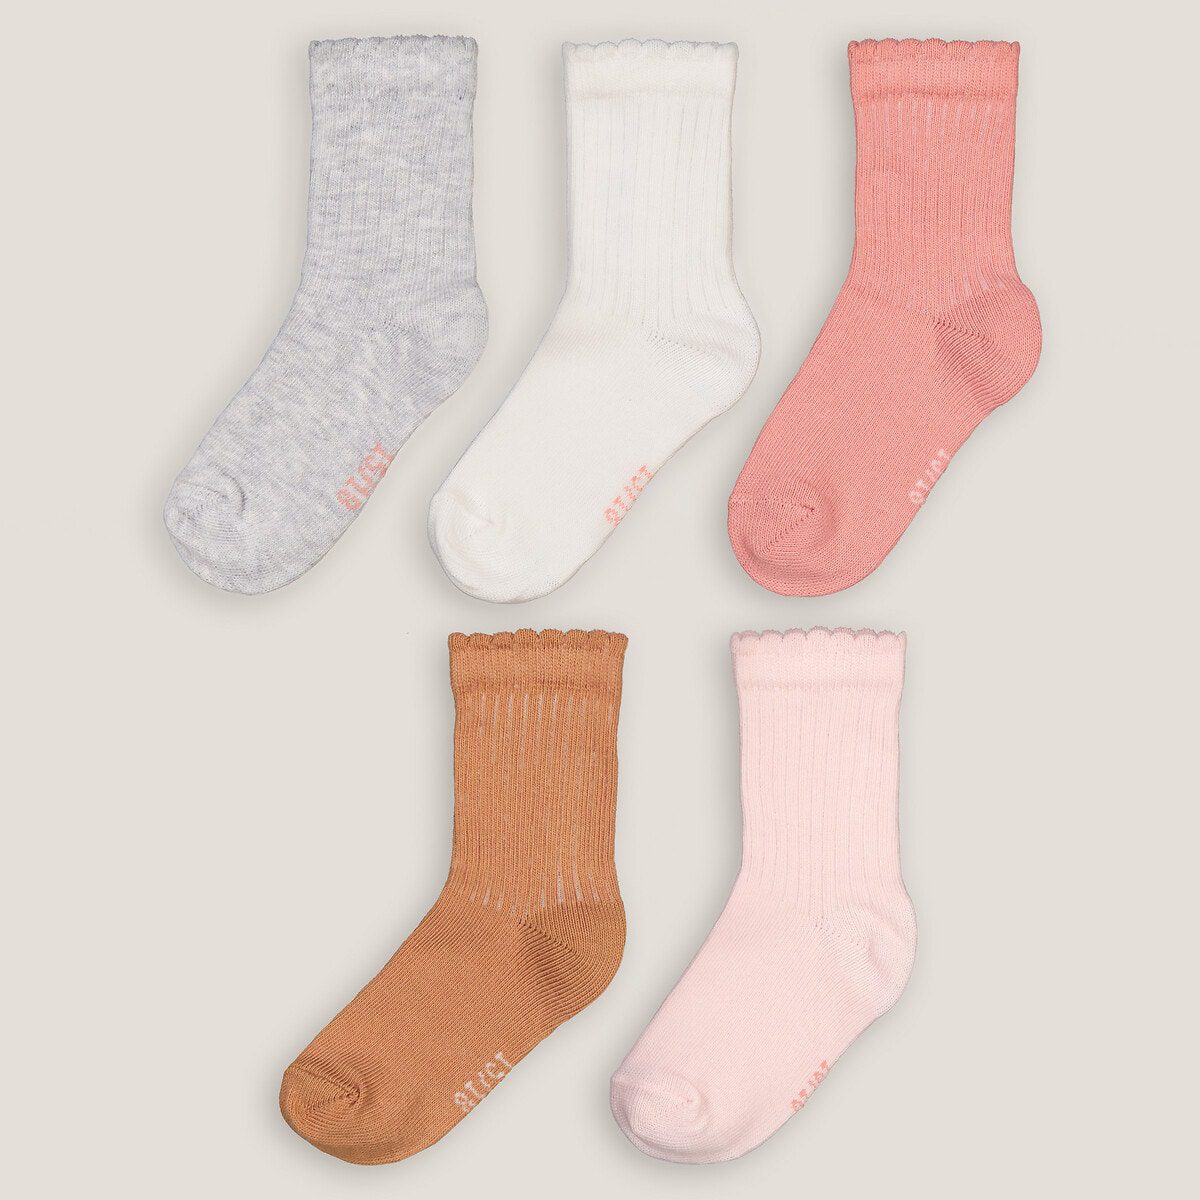 Σετ 5 ζευγάρια μονόχρωμες κάλτσες Διαφορα Χρωματα